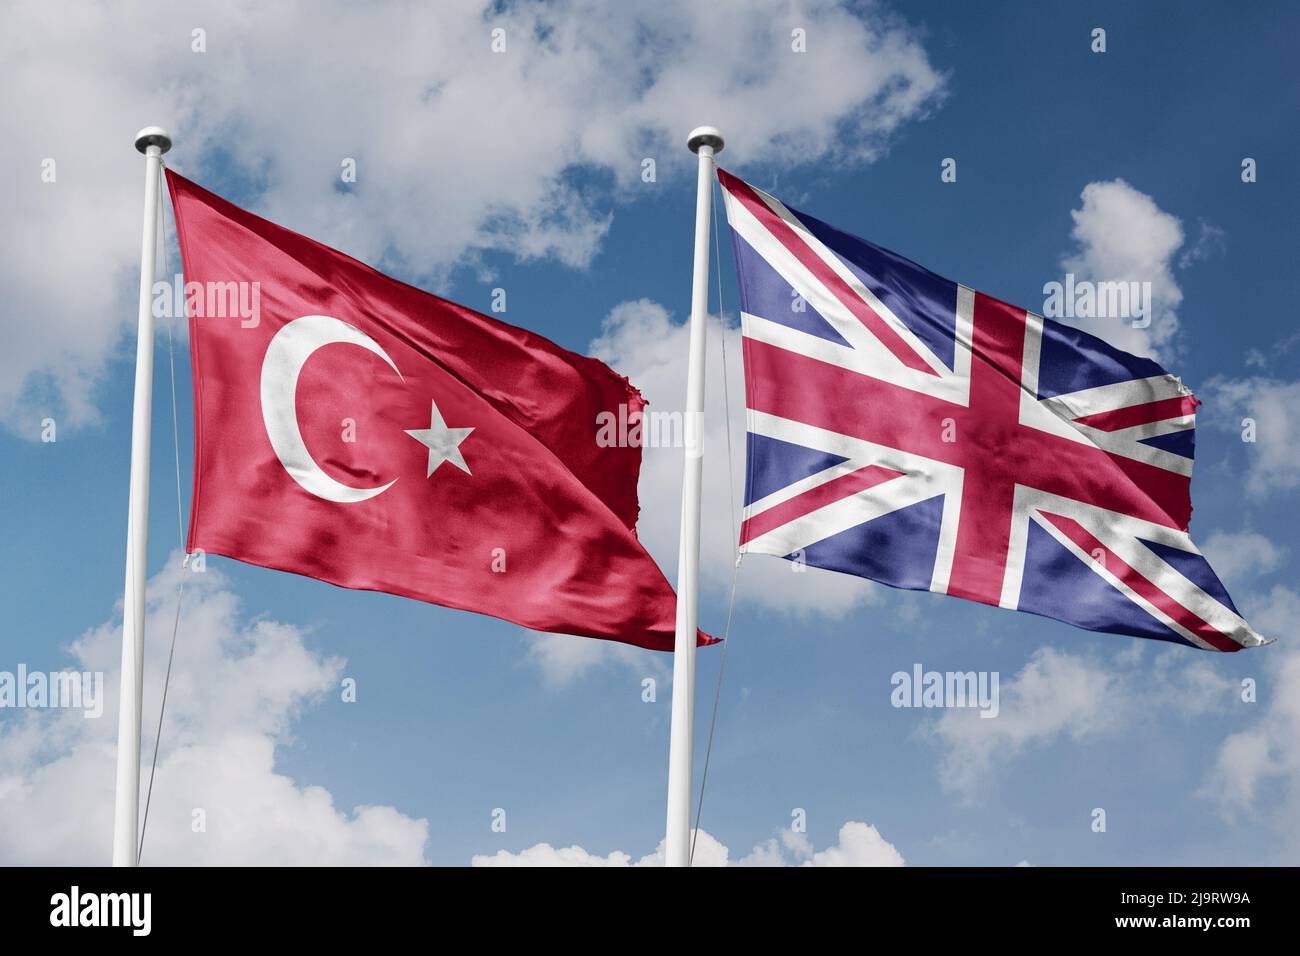 Turquie et Royaume-Uni deux drapeaux sur les mâts et fond bleu ciel nuageux Banque D'Images